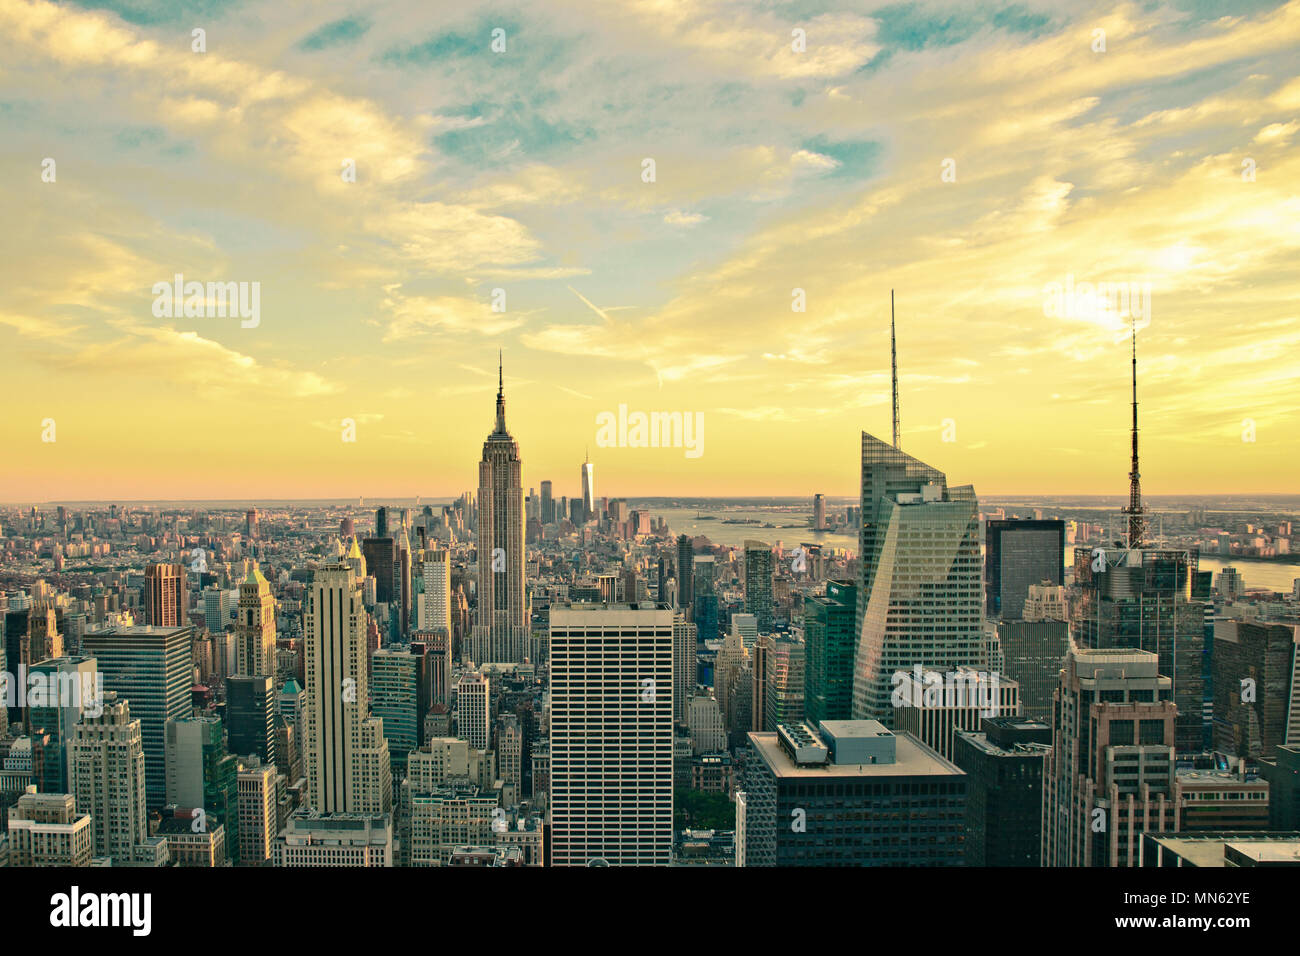 New York City skyline at sunset avec filtre vintage Banque D'Images